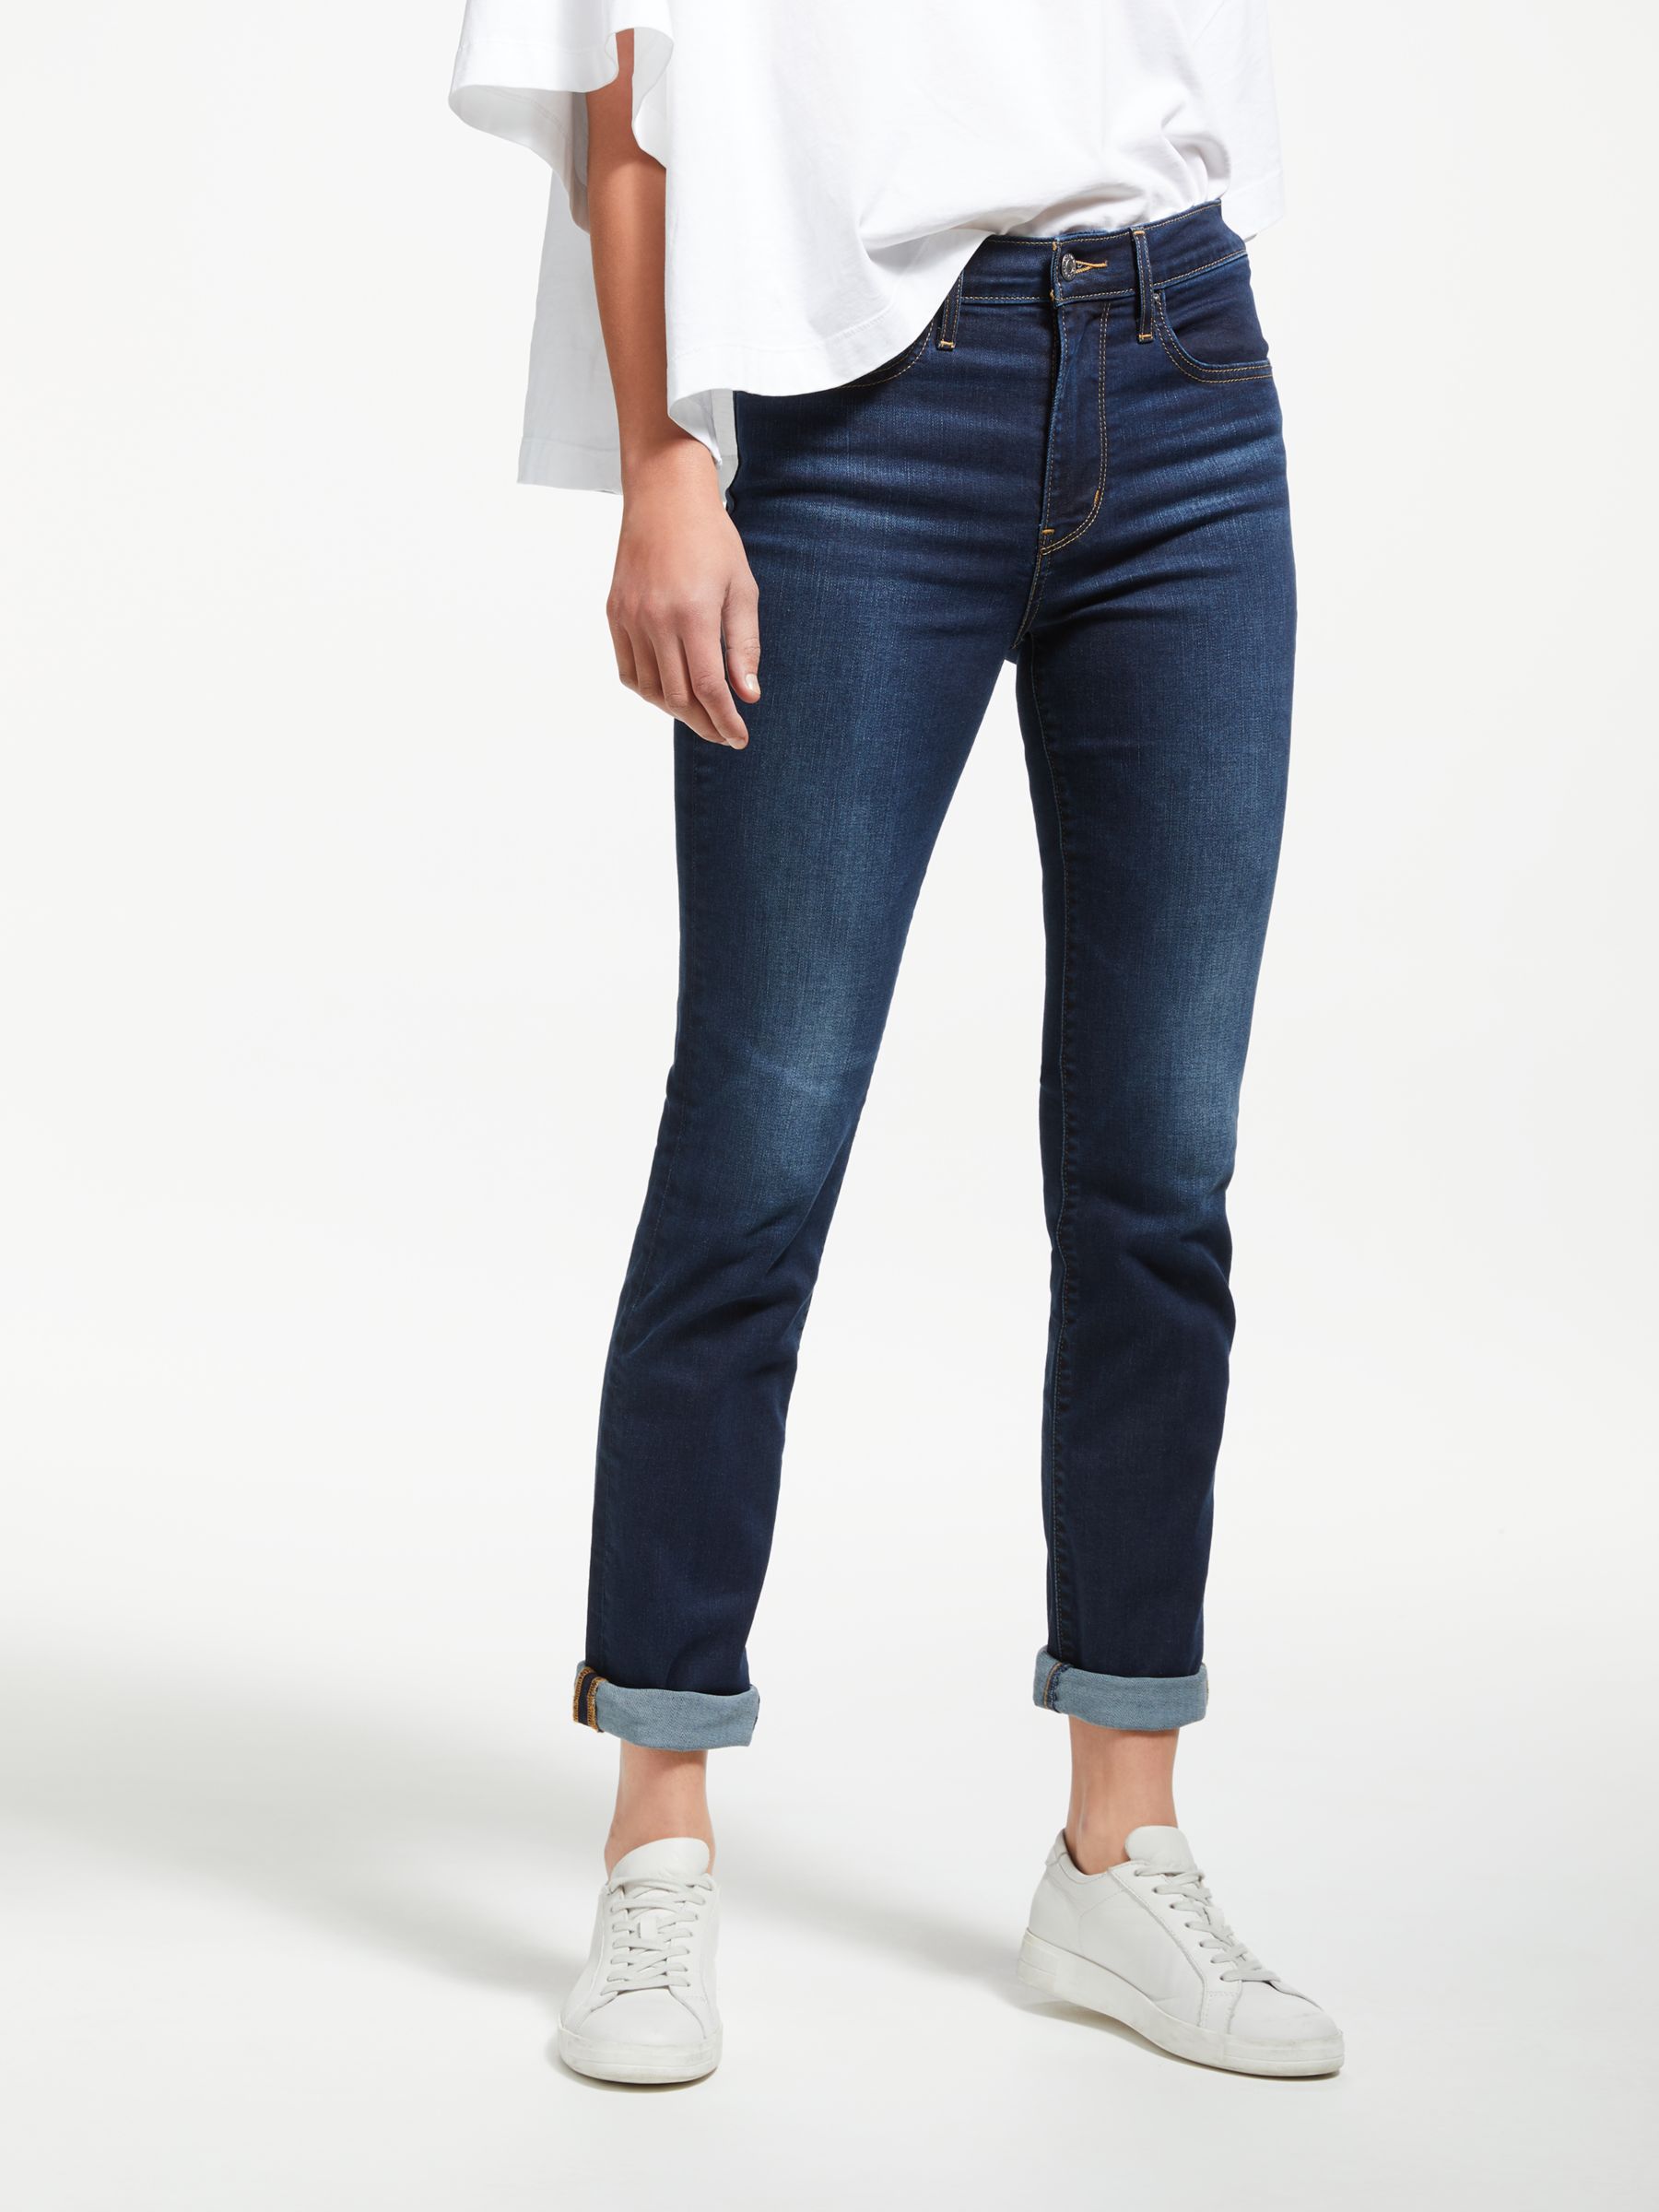 levis jeans 724